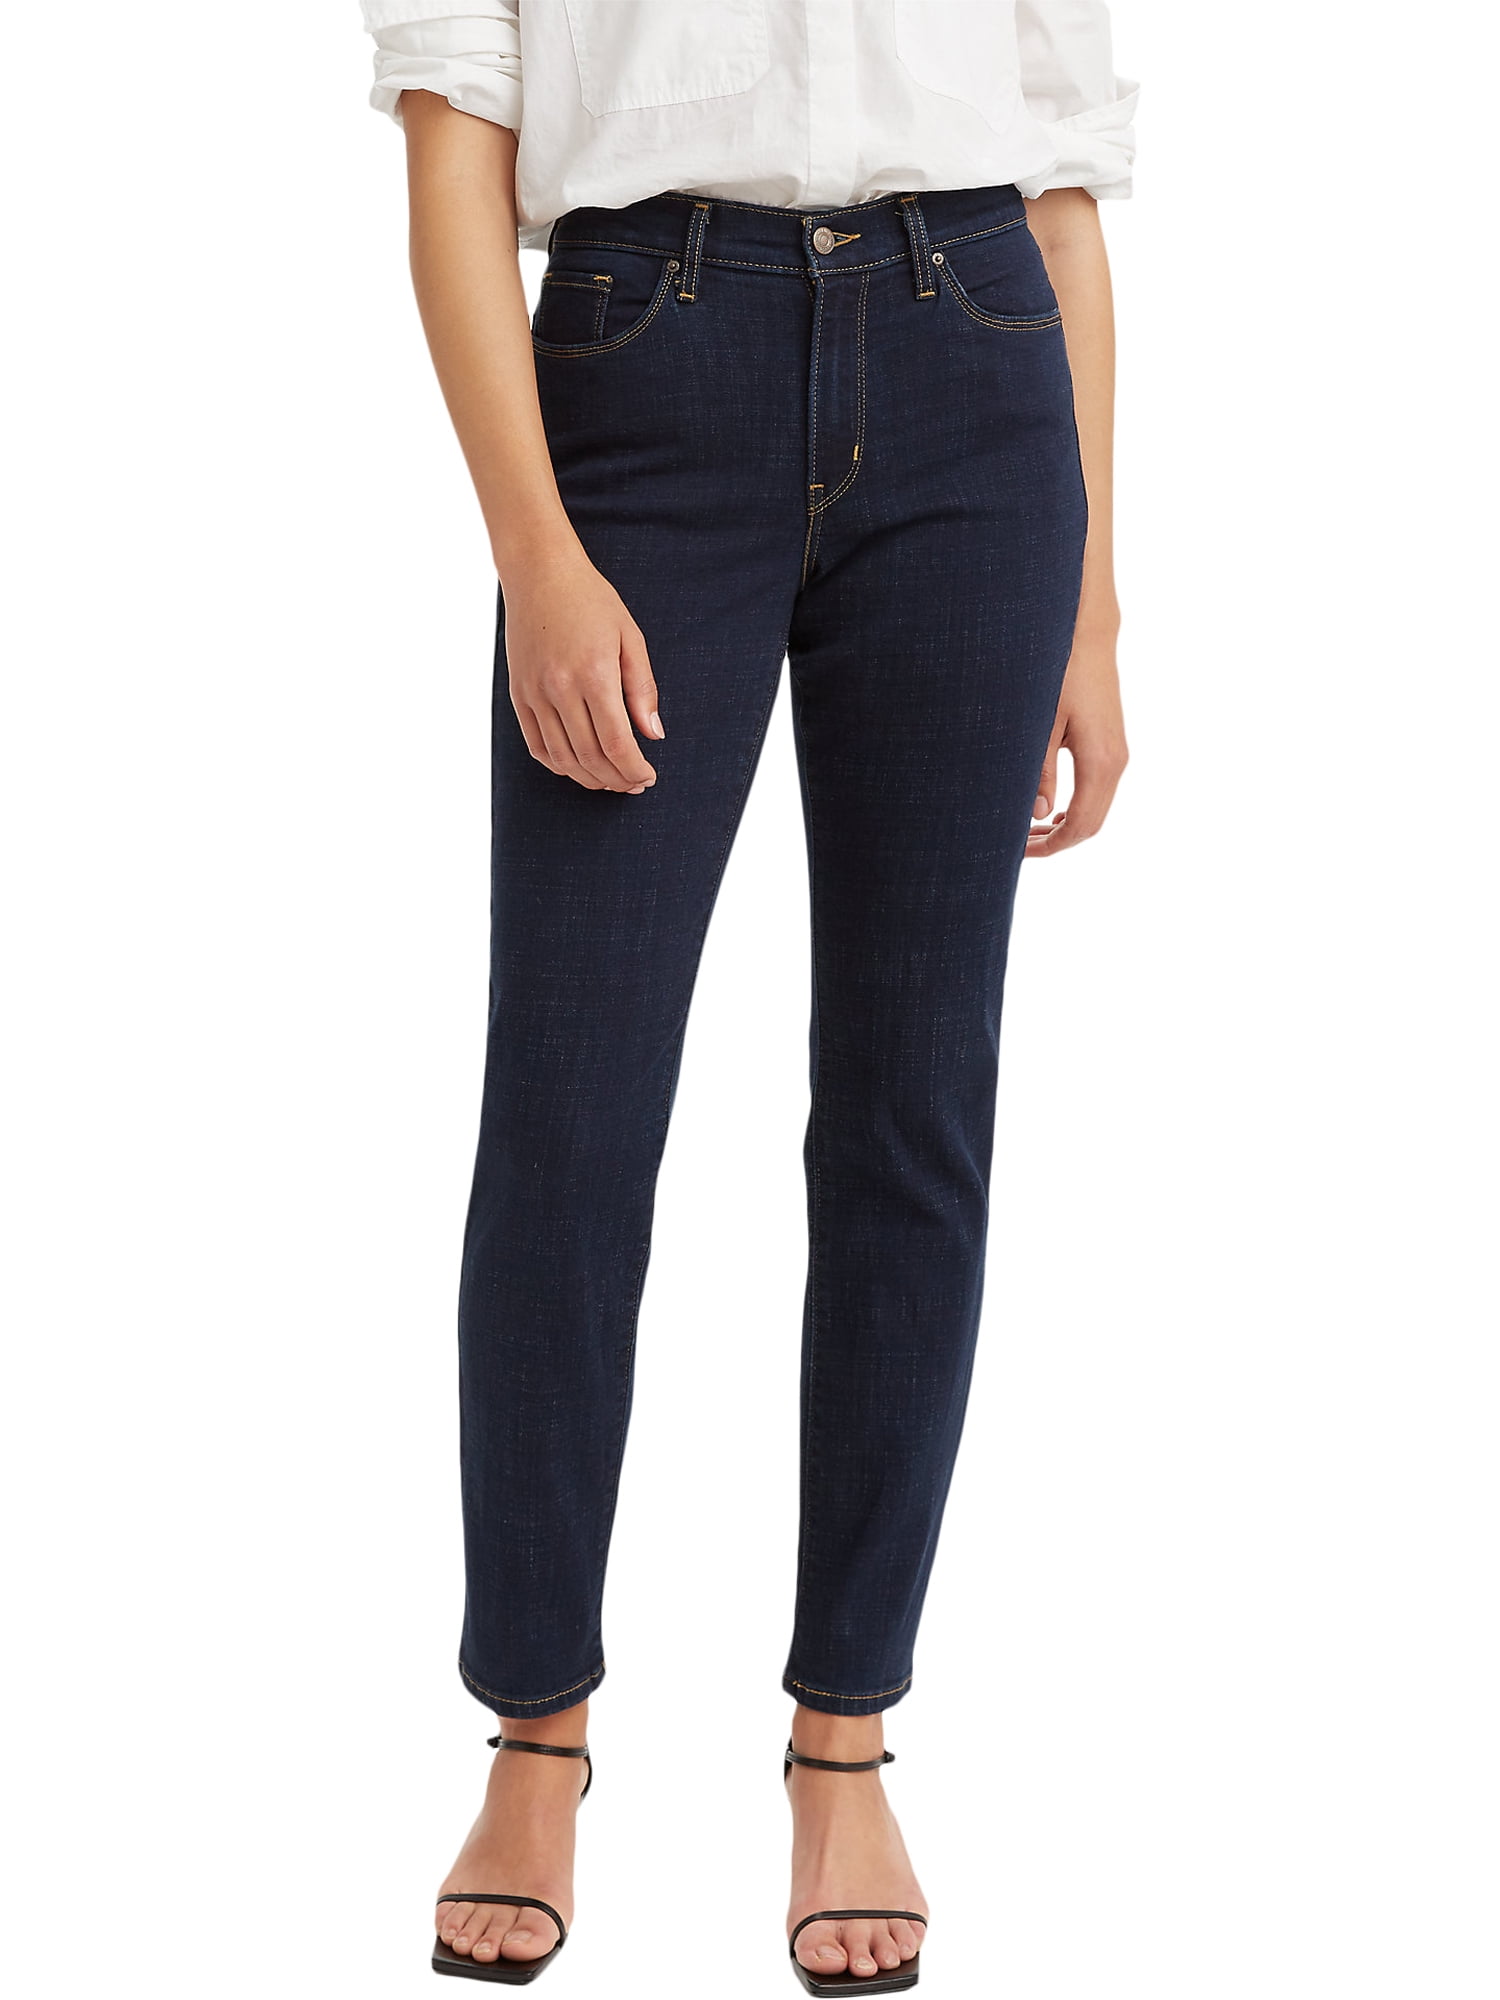 Levi’s Original Red Tab Women's Classic Straight Fit Jeans - Walmart.com